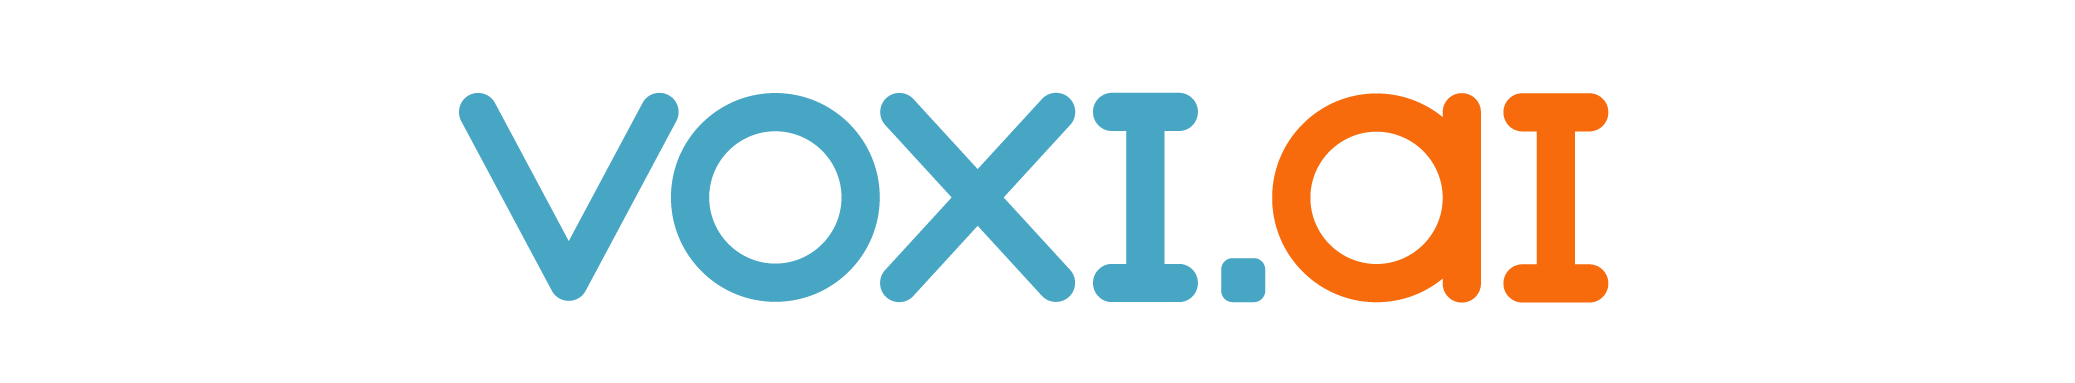 Voxiai logo